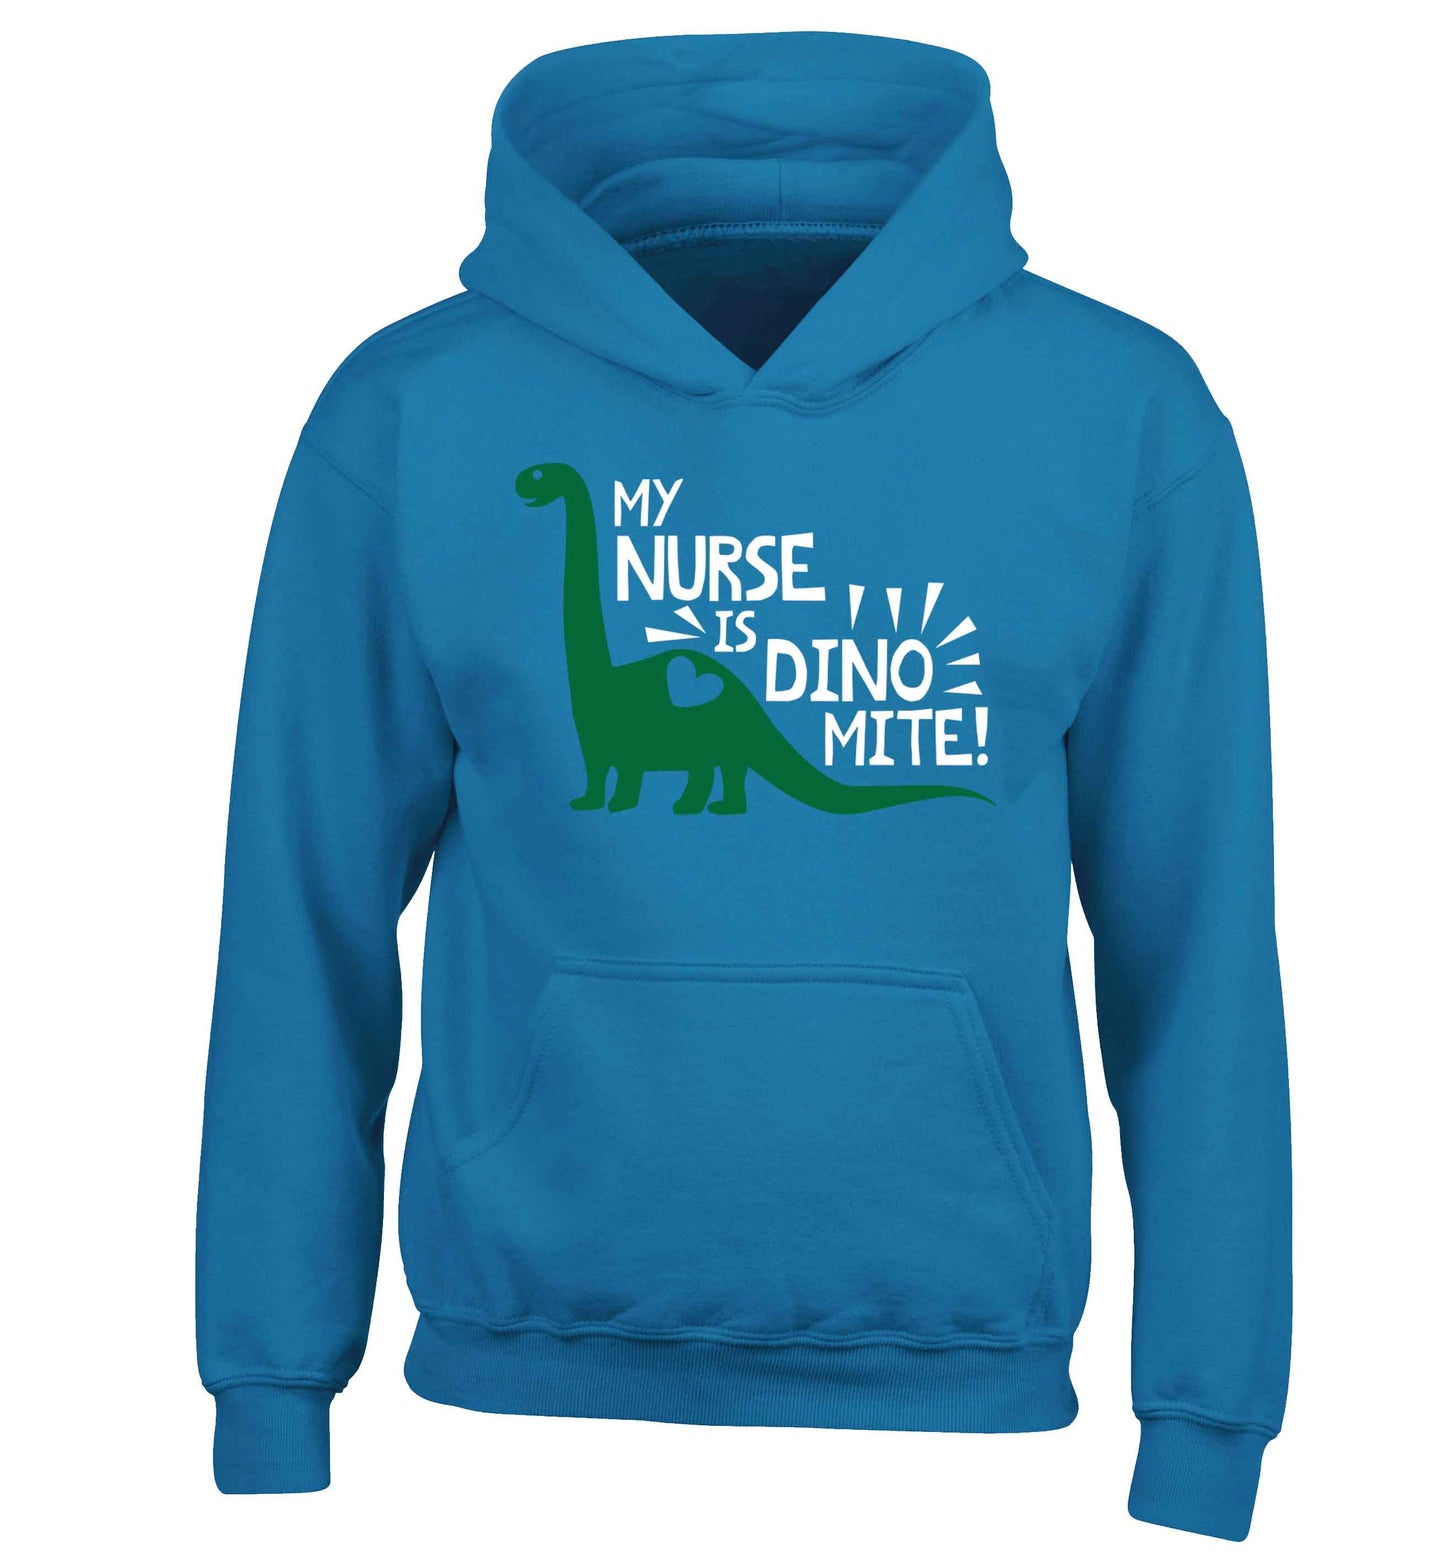 My nurse is dinomite! children's blue hoodie 12-13 Years